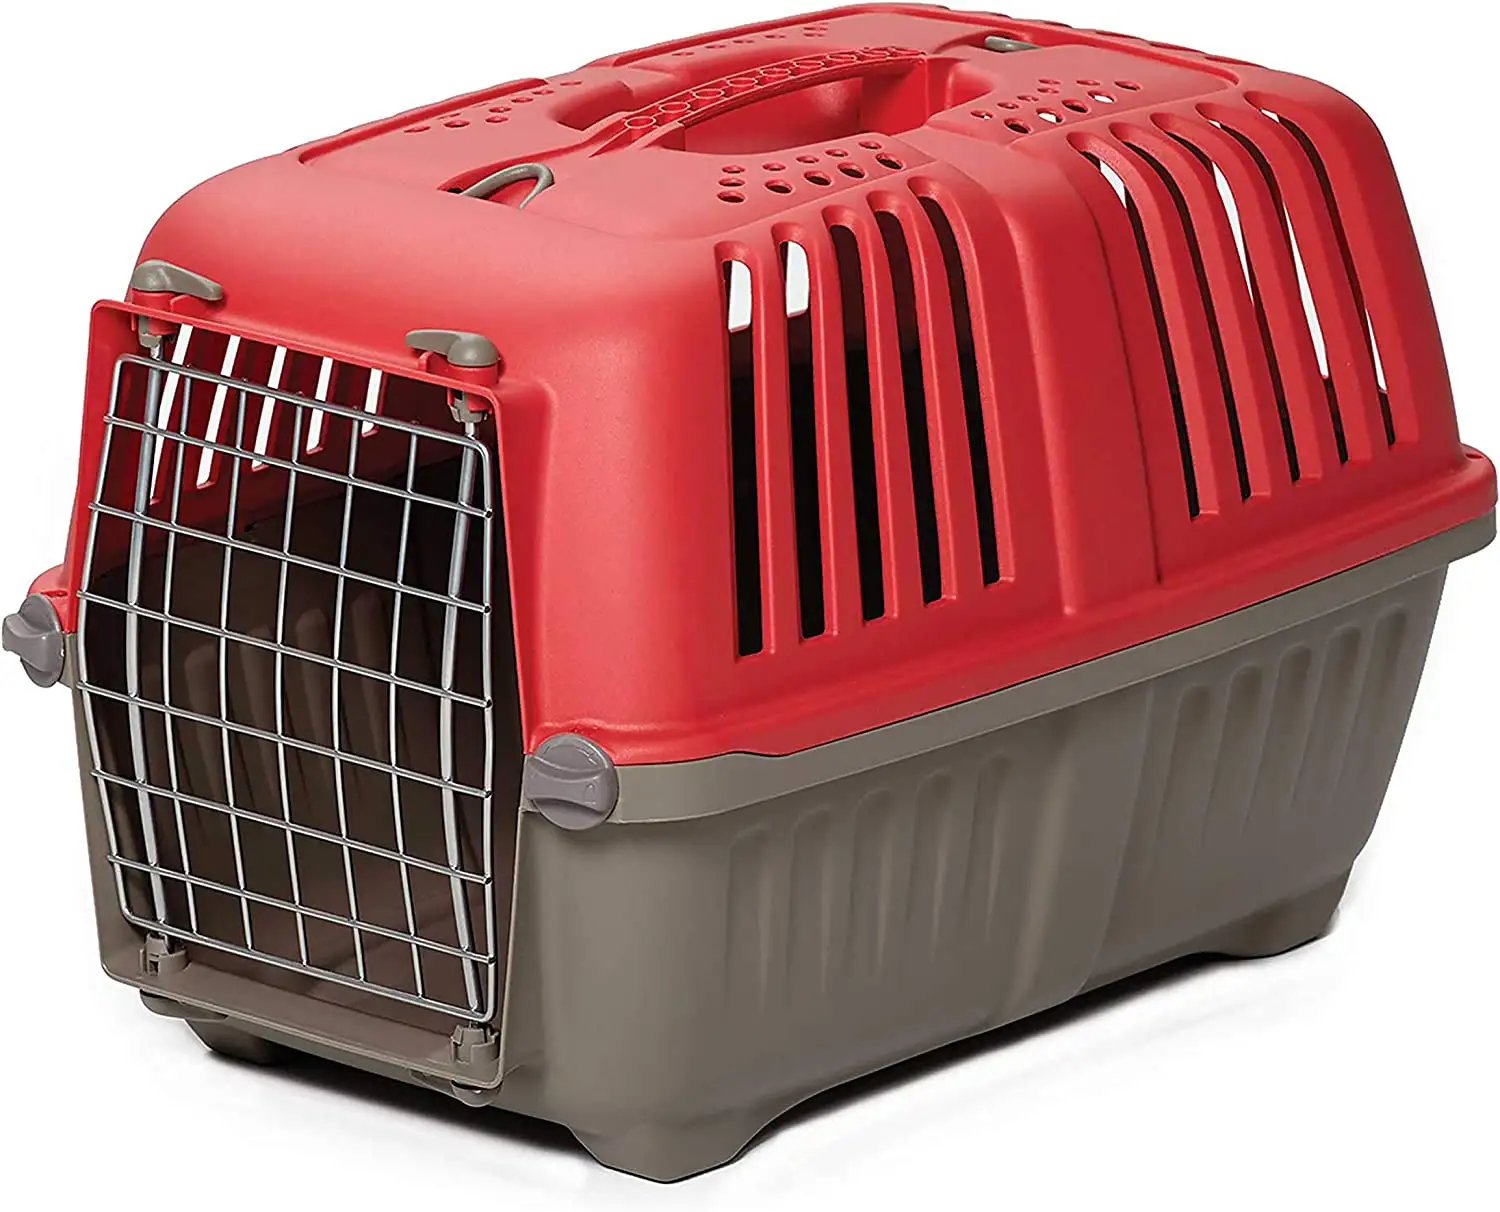 Bán buôn vật nuôi lồng di động Con Mèo con chó du lịch vận chuyển hộp hãng hàng không được phê duyệt vật nuôi tàu sân bay Sản phẩm chất lượng cao Hàng không hộp